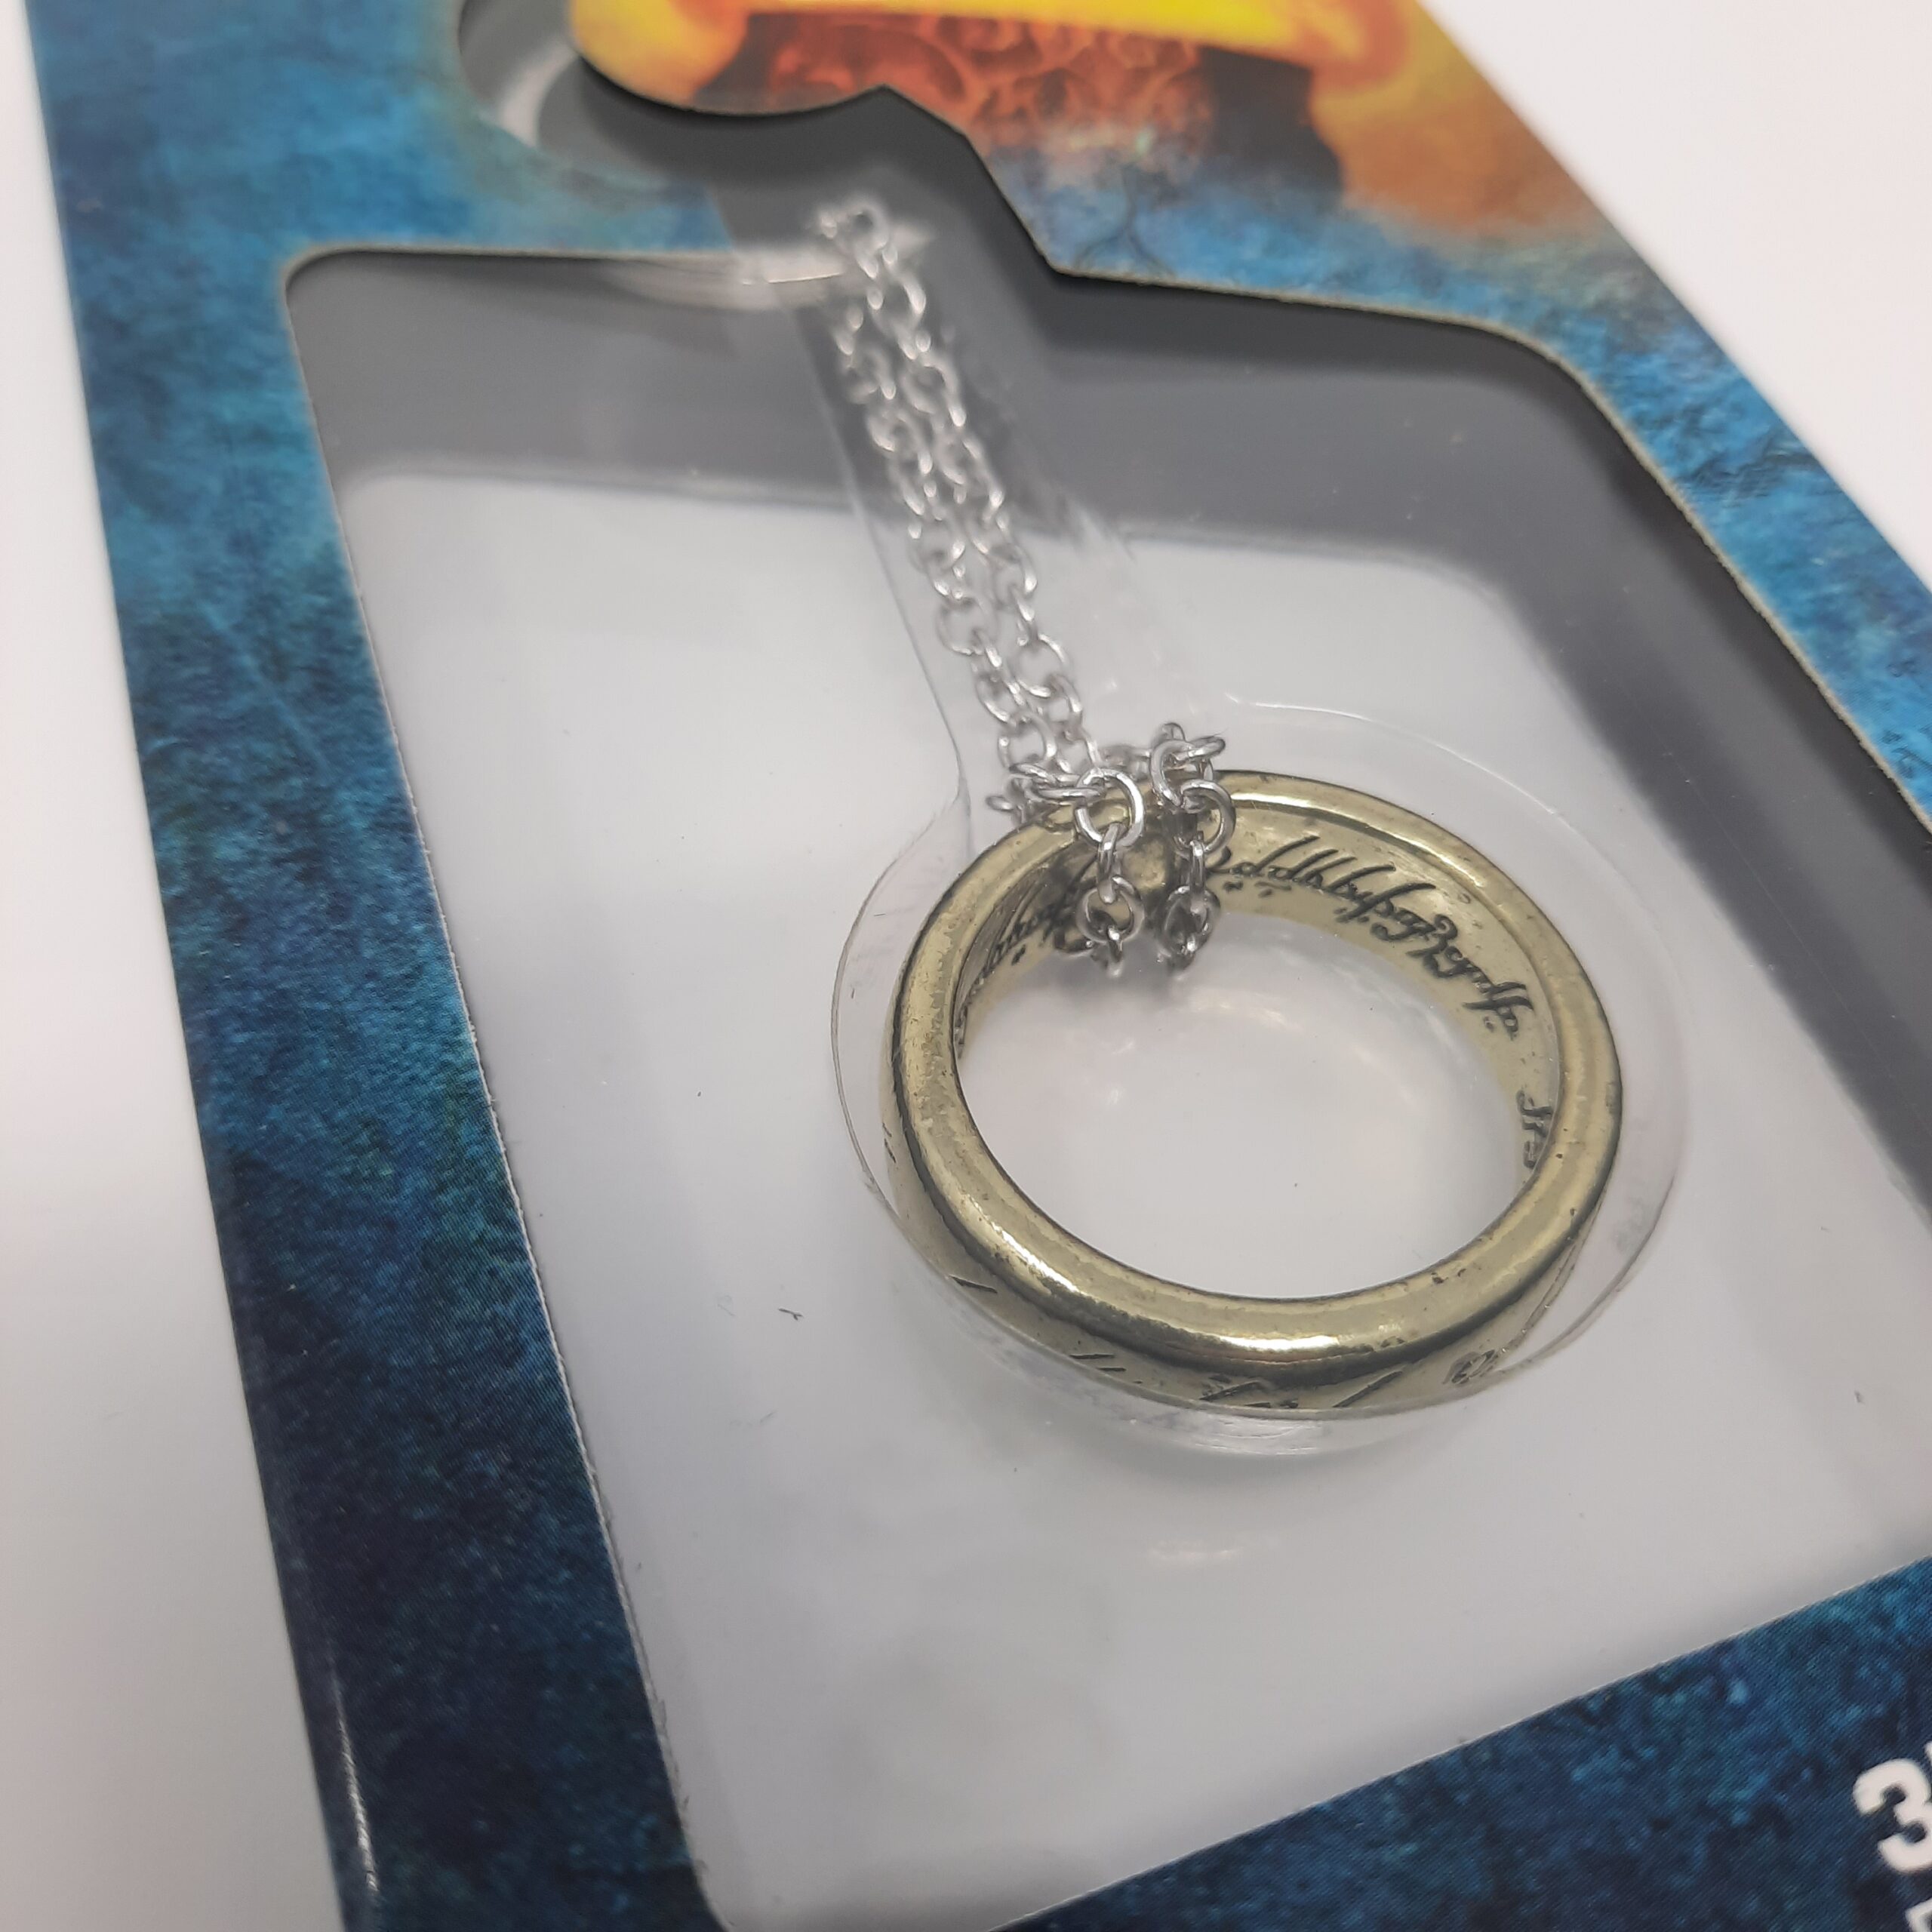 HERR DER RINGE – Schlüsselanhänger 3D “Ring” – Nerdmagnet – Anime Figuren  und Gaming Merchandise